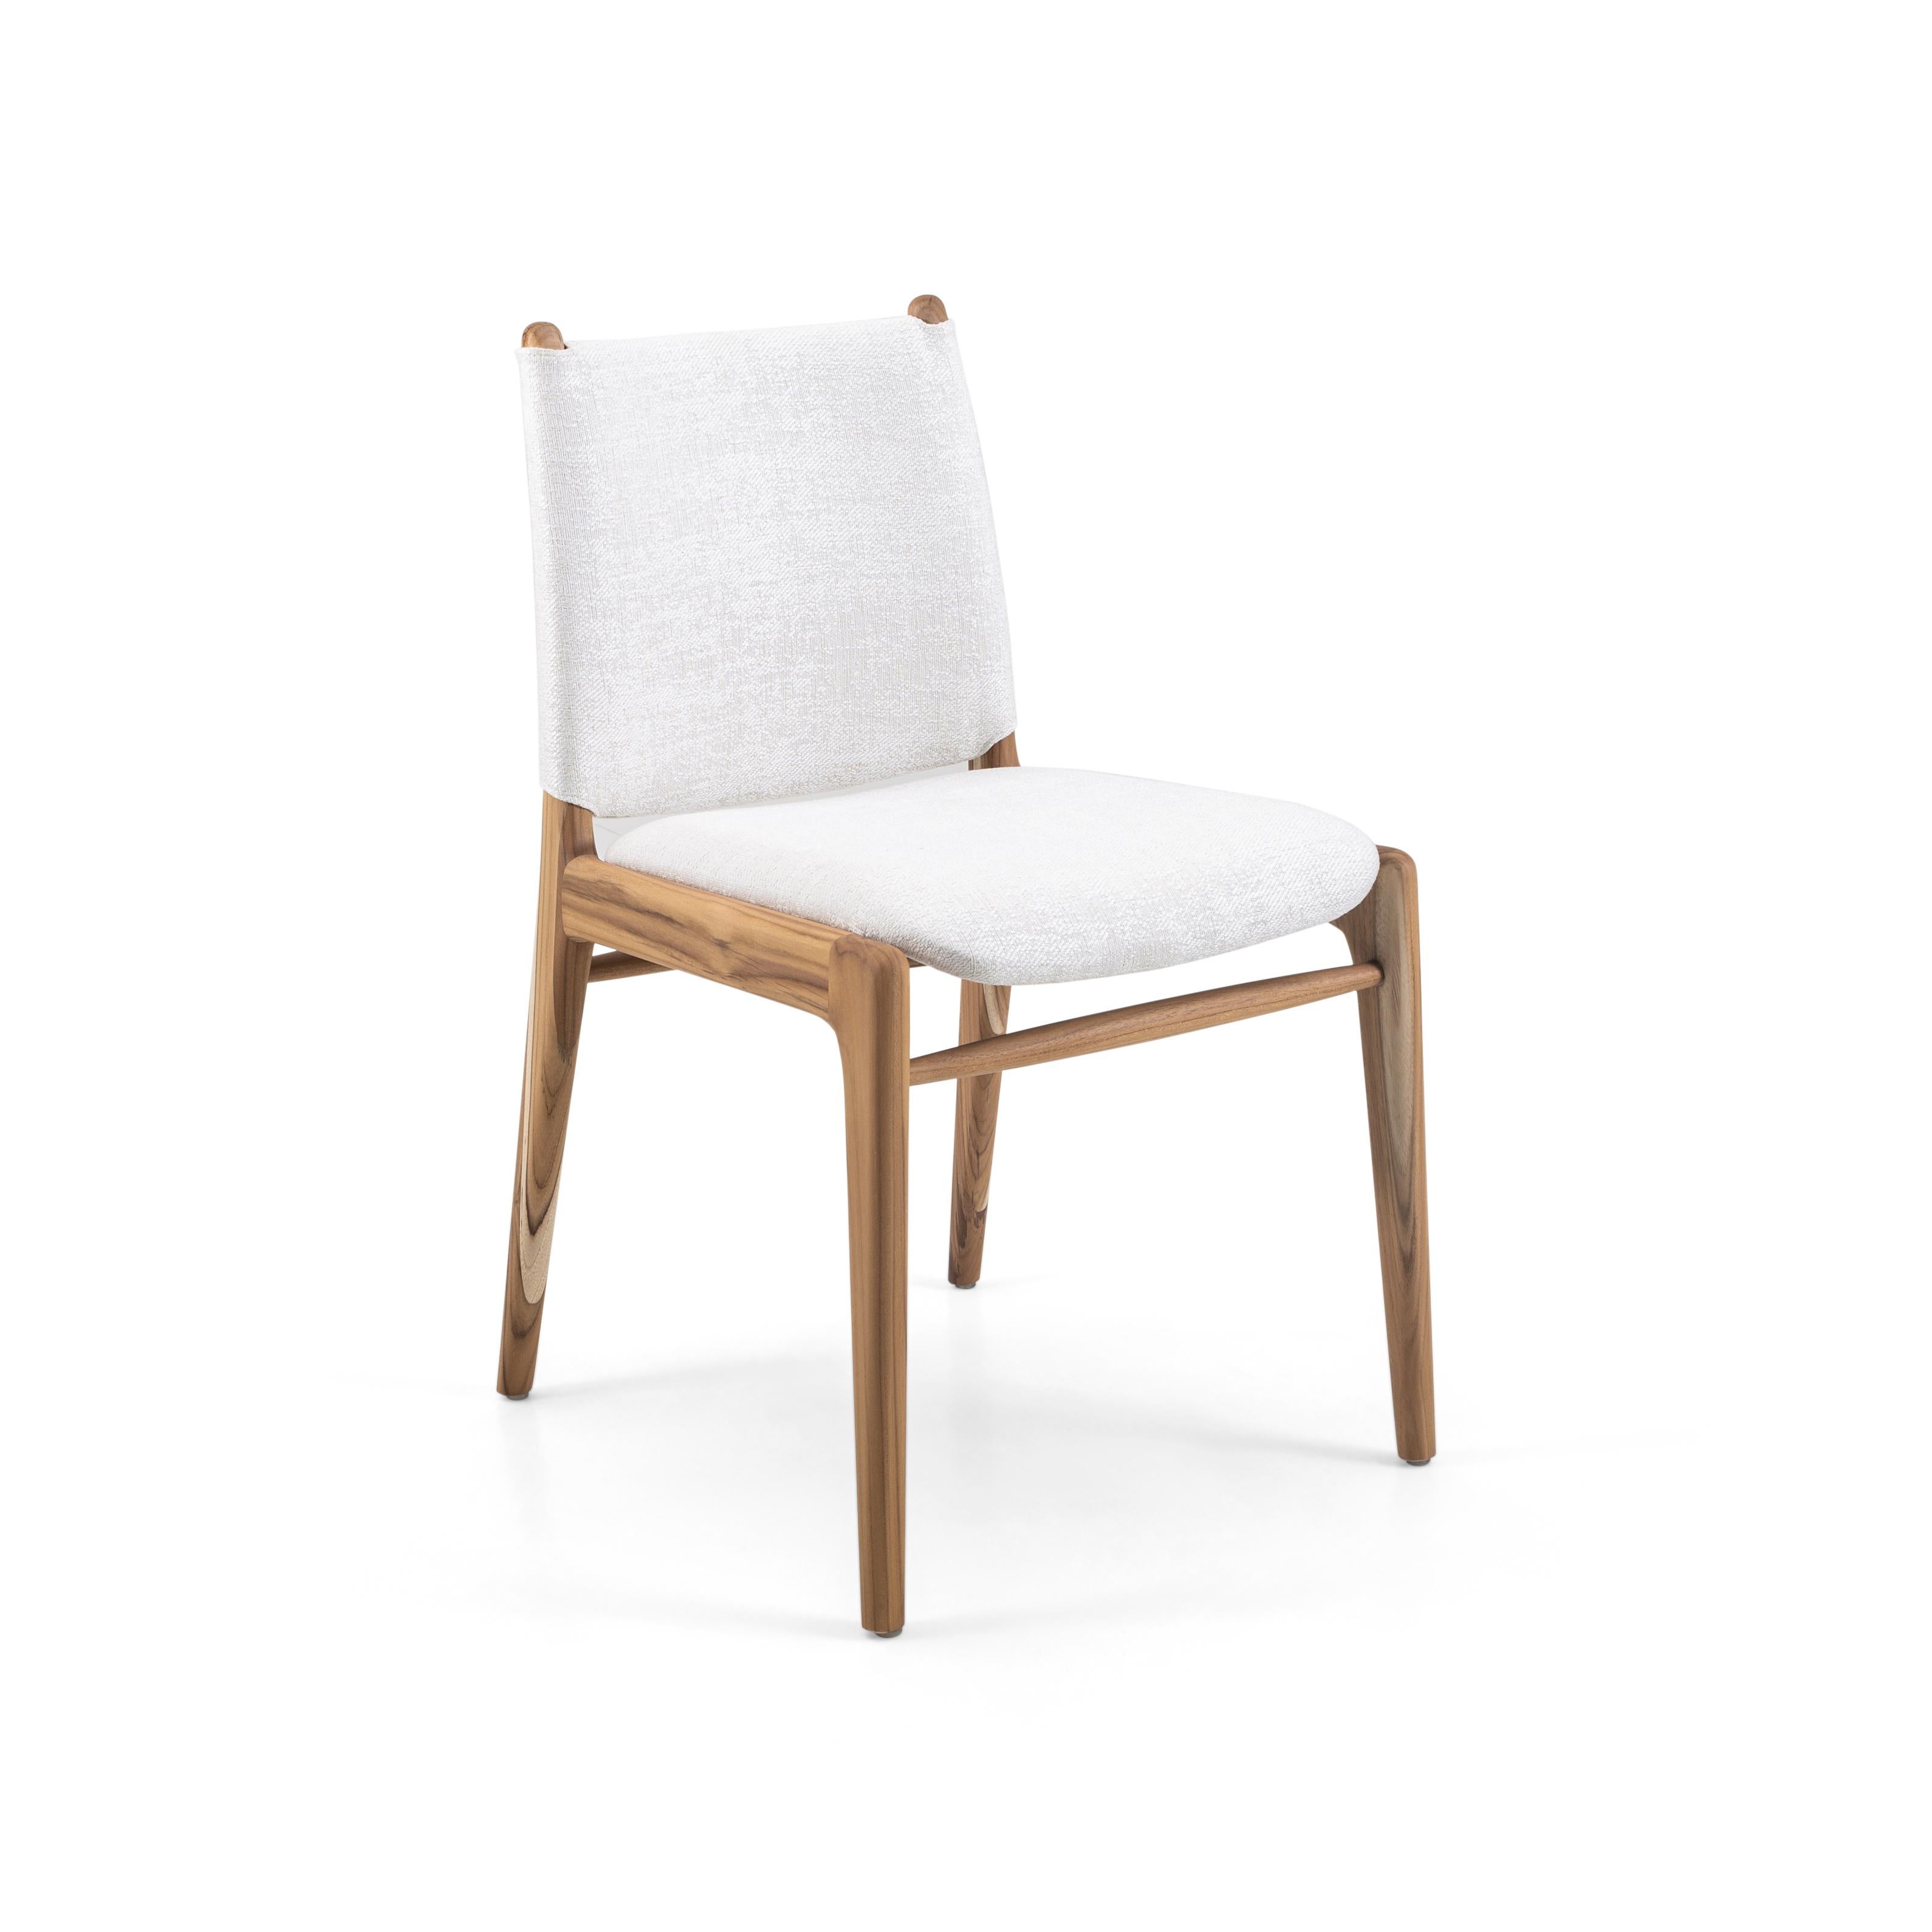 La chaise Cappio met en valeur notre magnifique finition en bois de teck associée à un superbe tissu beige clair. Cette chaise présente un design unique de boucles sur le dossier de l'assise. Notre équipe chez Uultis a conçu ce design simple mais